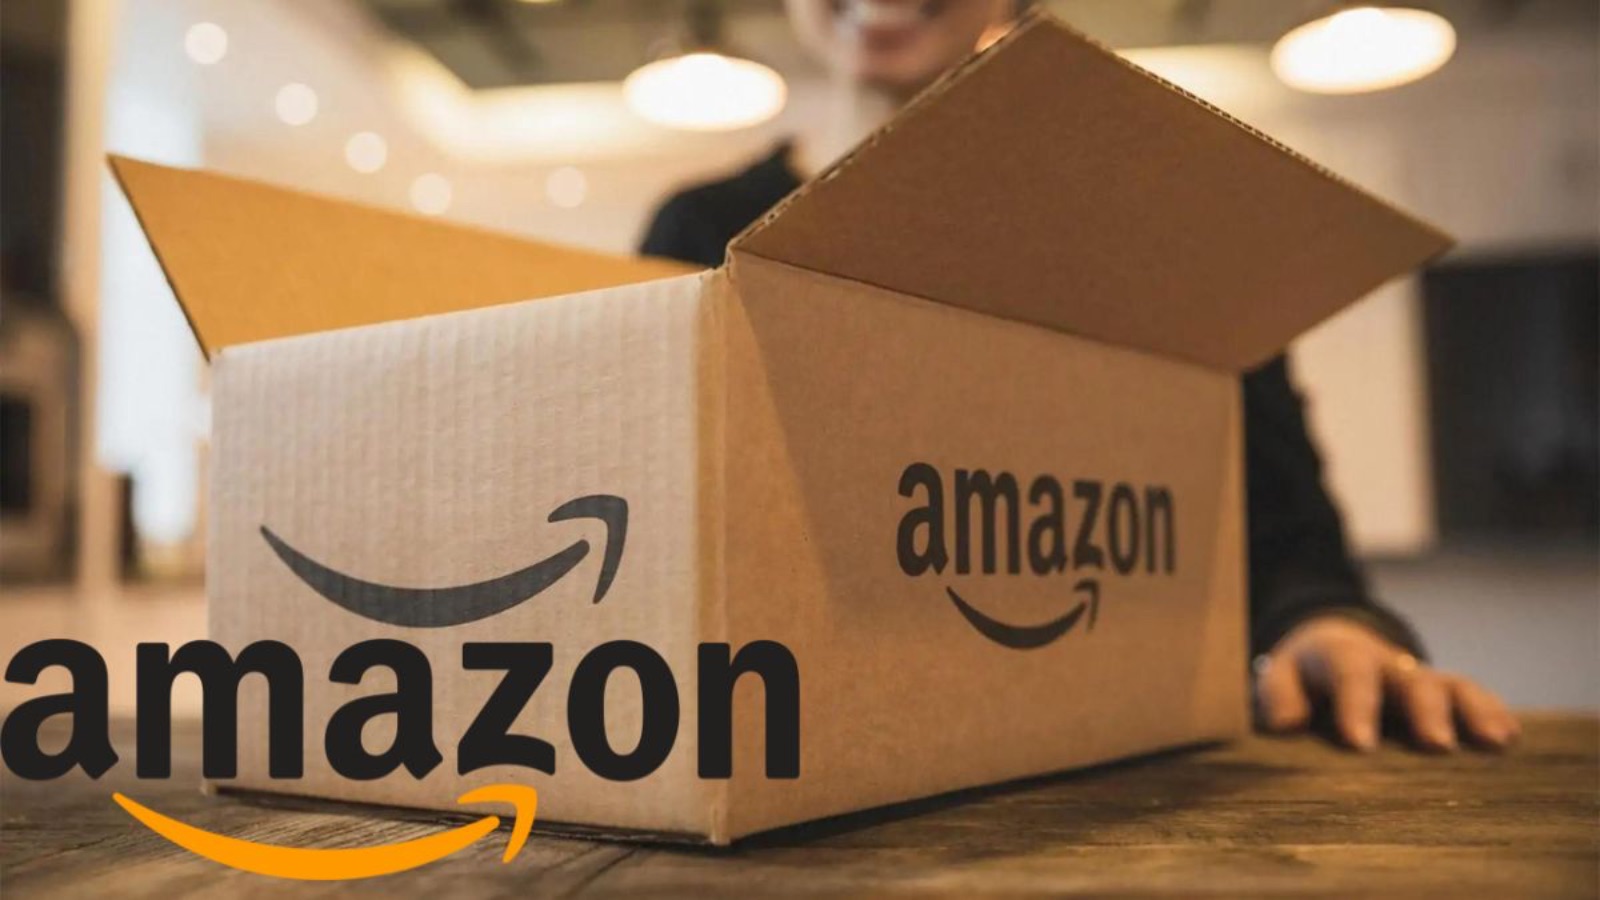 Amazon è pazza, Prime Day e offerte già disponibili nella lista segreta